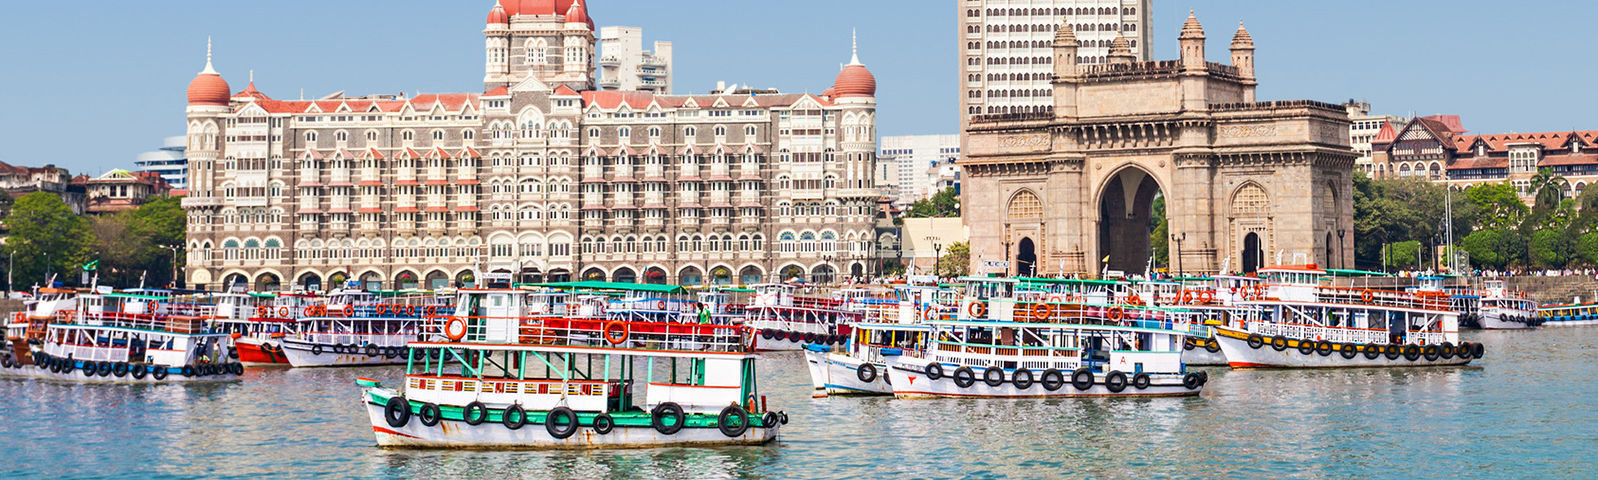  Bombay  en inde   Vacances Guide Voyage